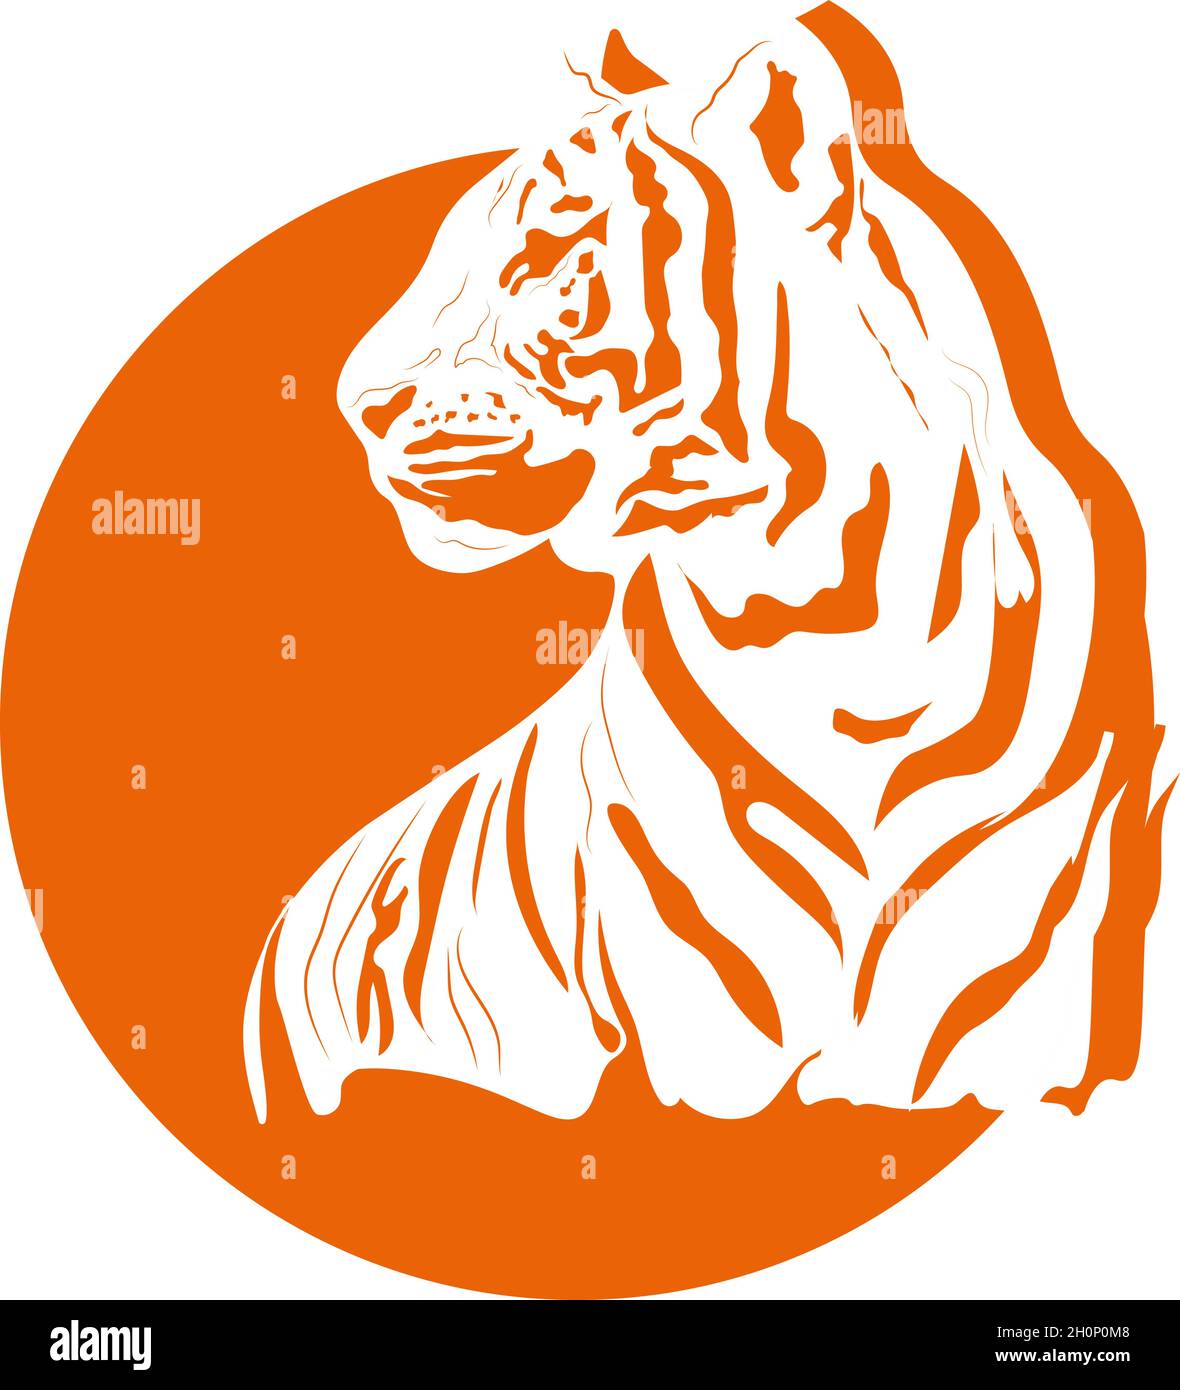 Tigre redondo Imágenes recortadas de stock - Página 2 - Alamy